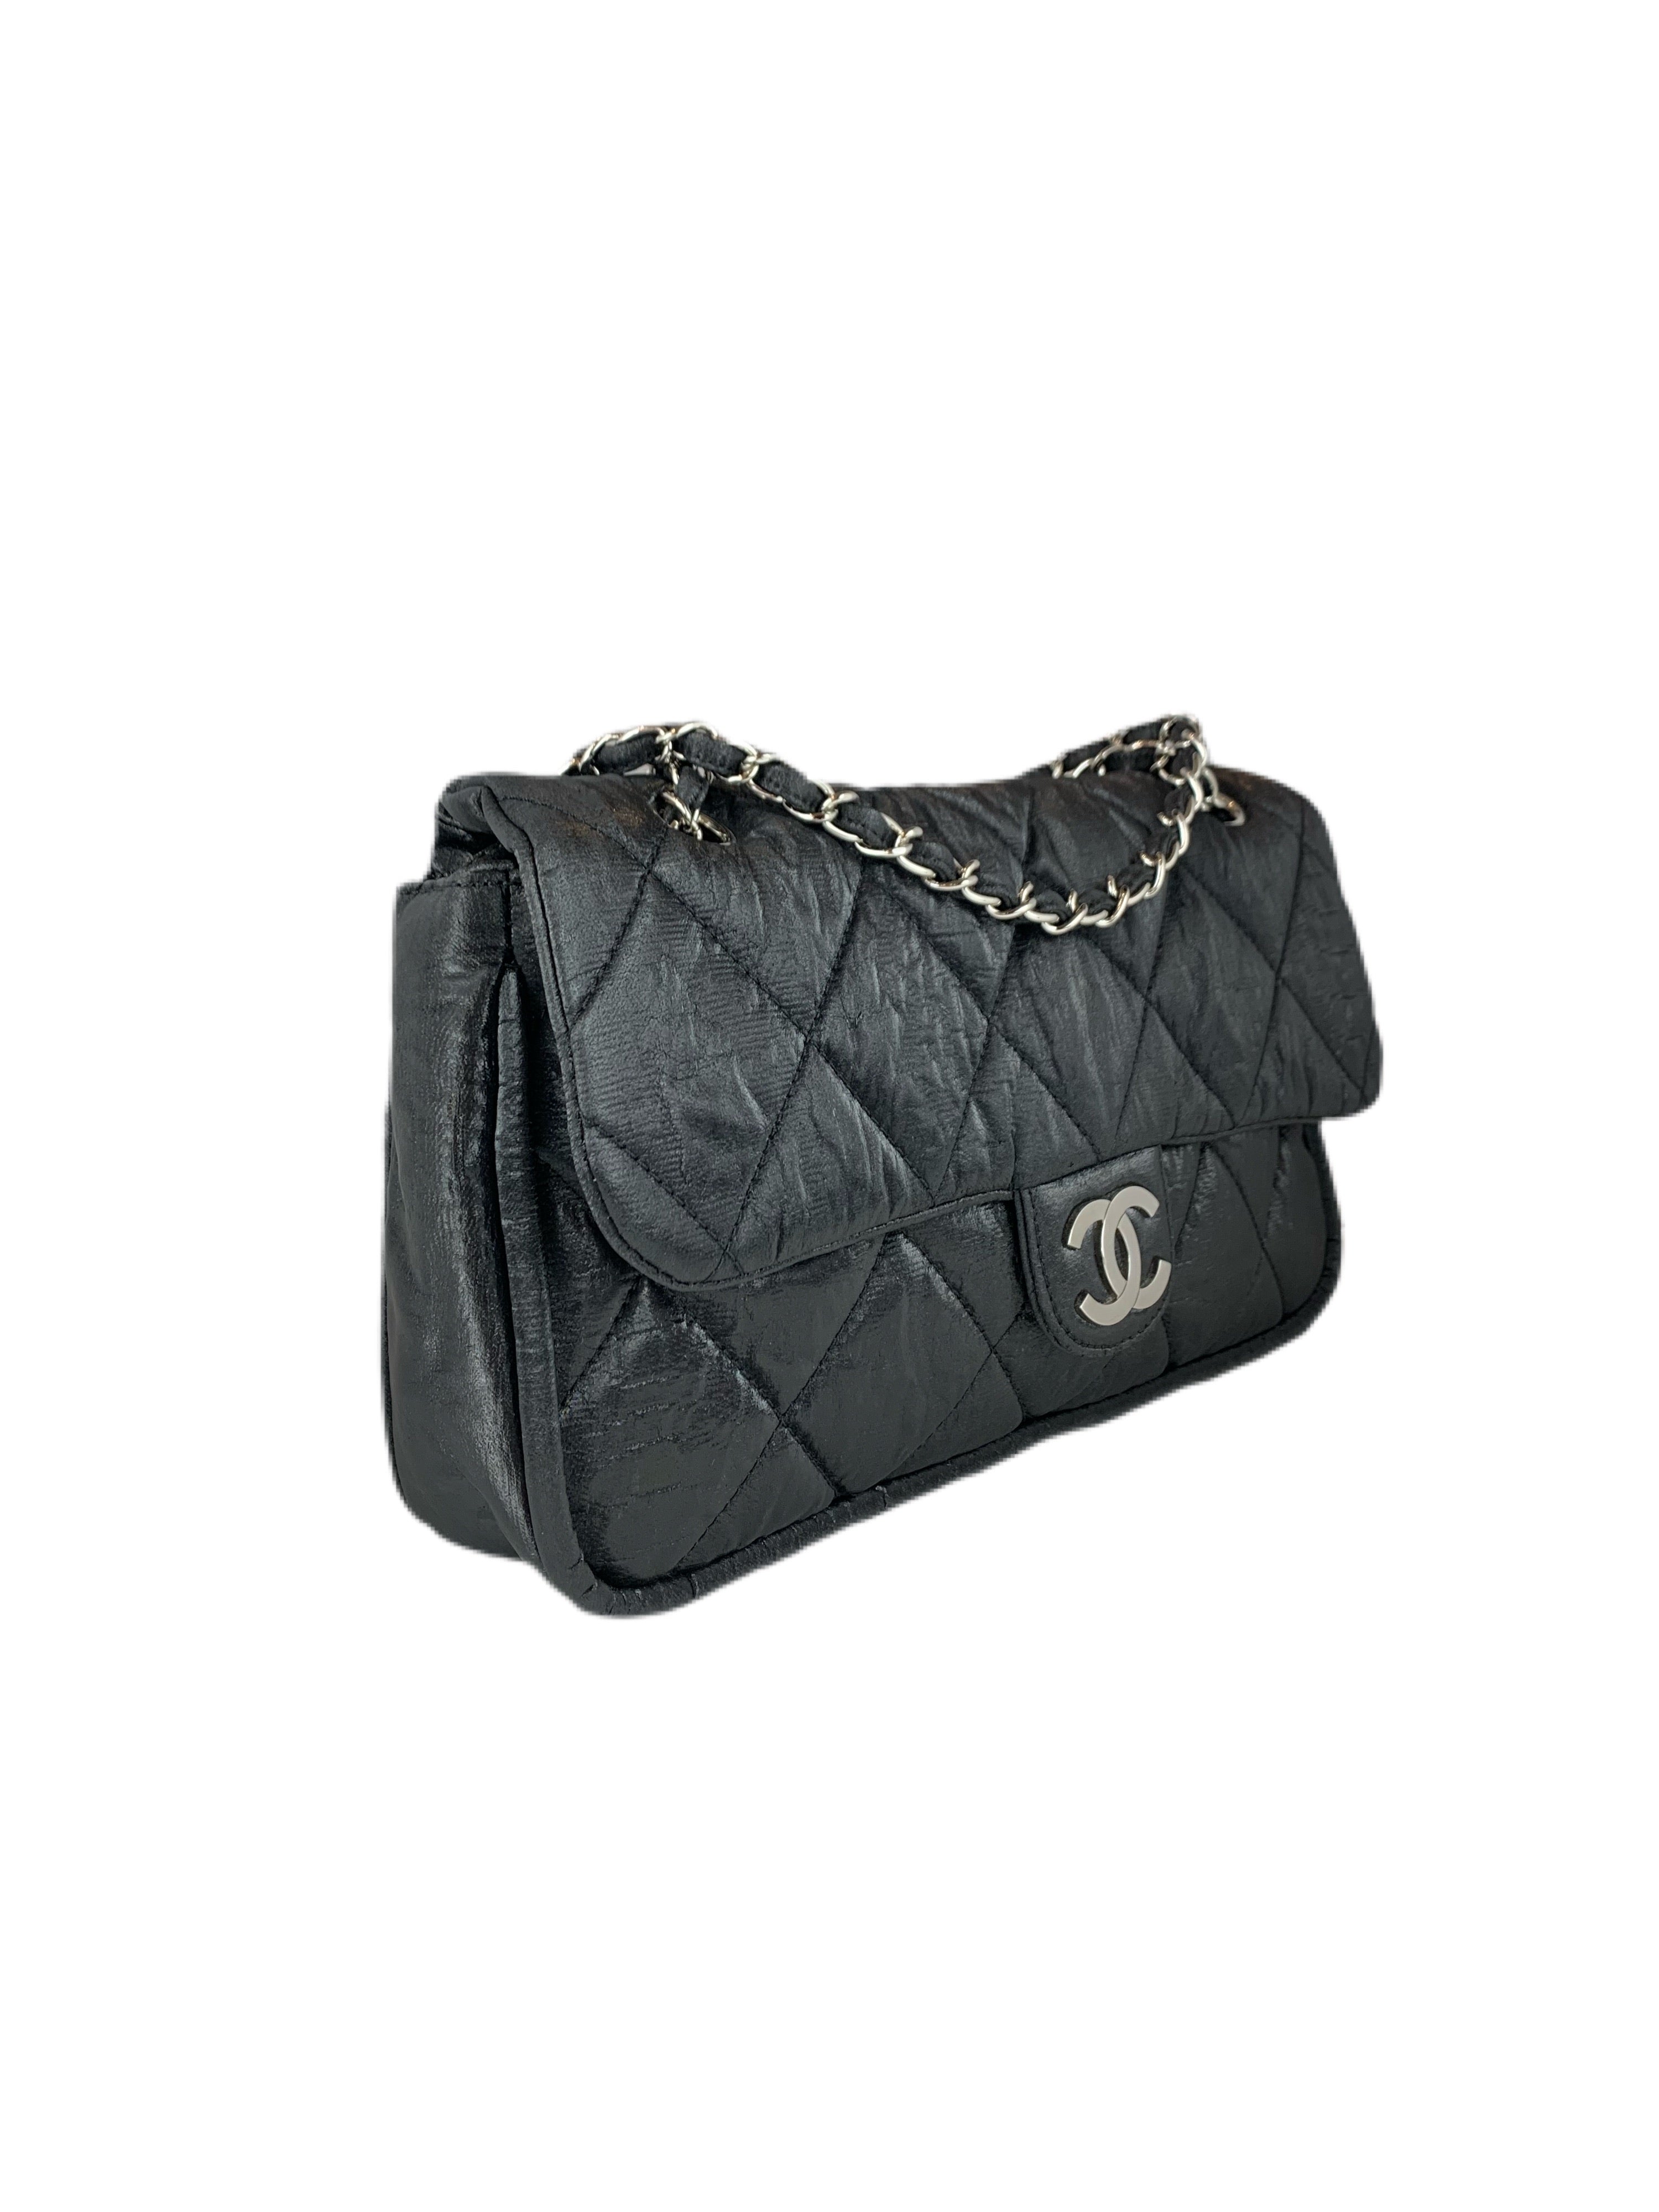 Chanel Le Marais Flap Bag - Black Shoulder Bags, Handbags - CHA642957